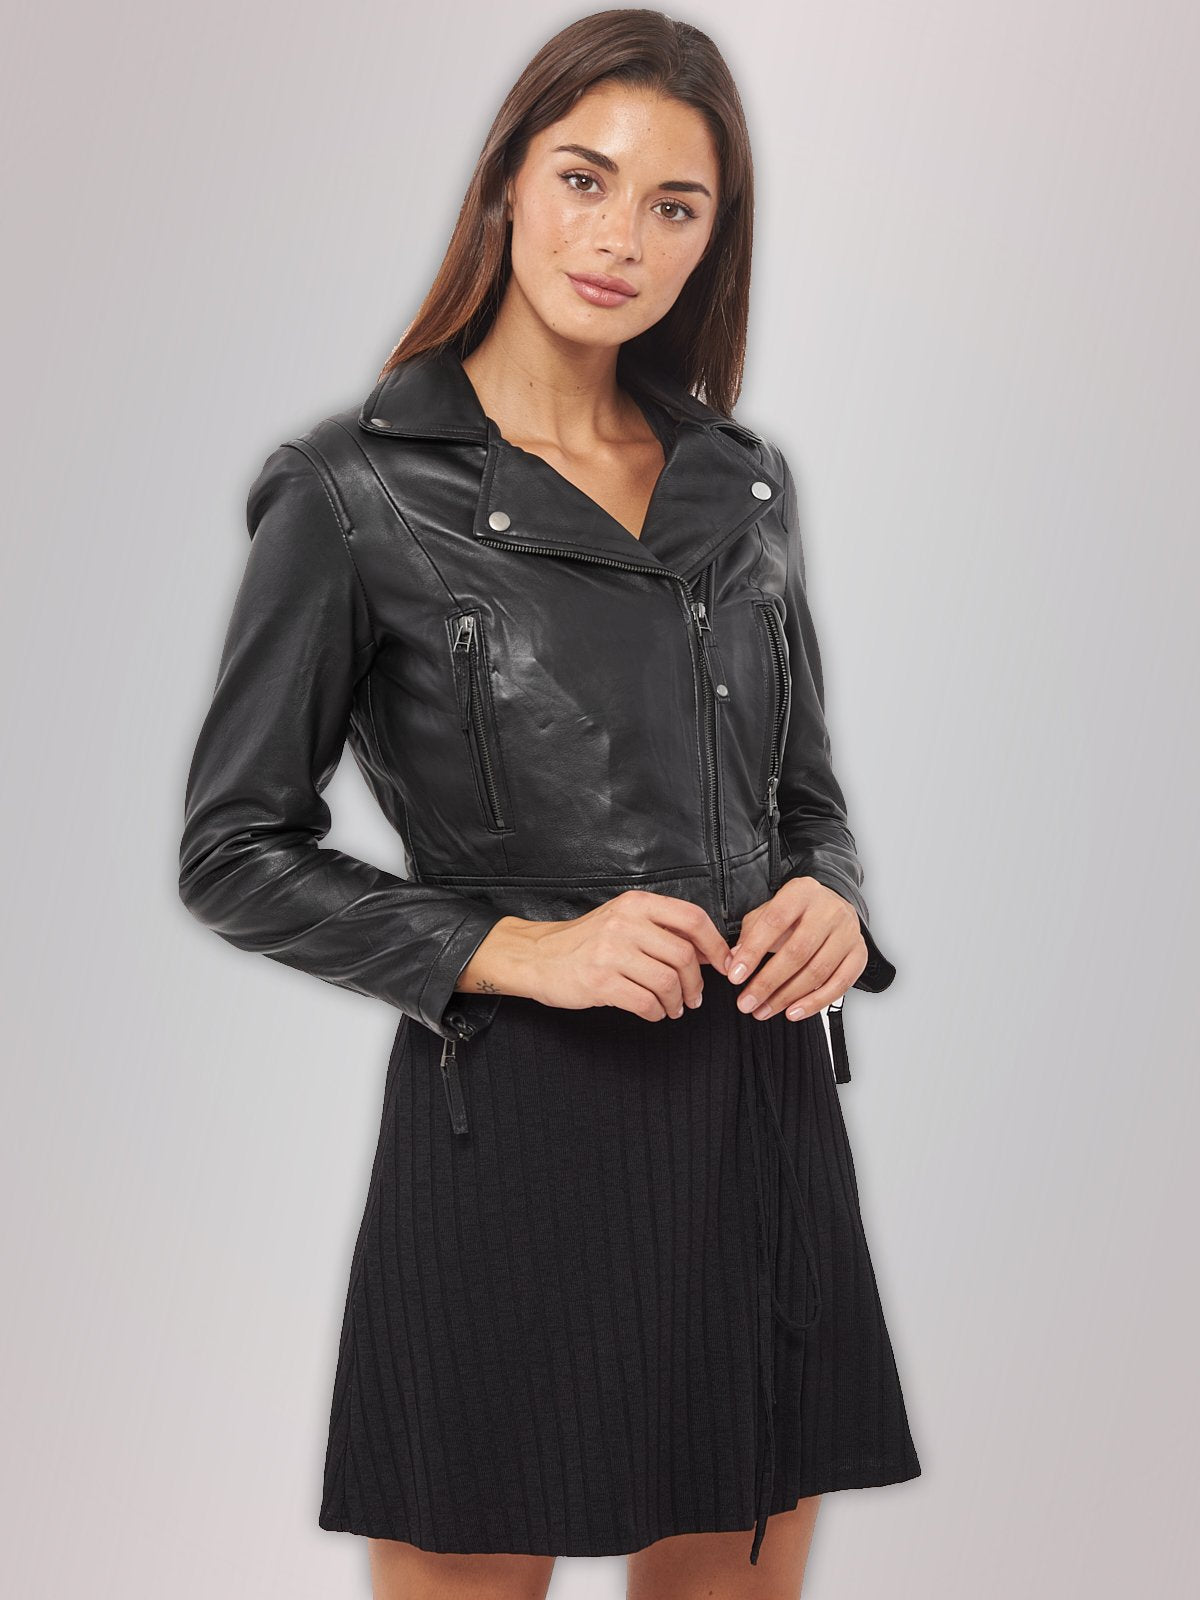 Women Black Biker Short Body Leather Jacket